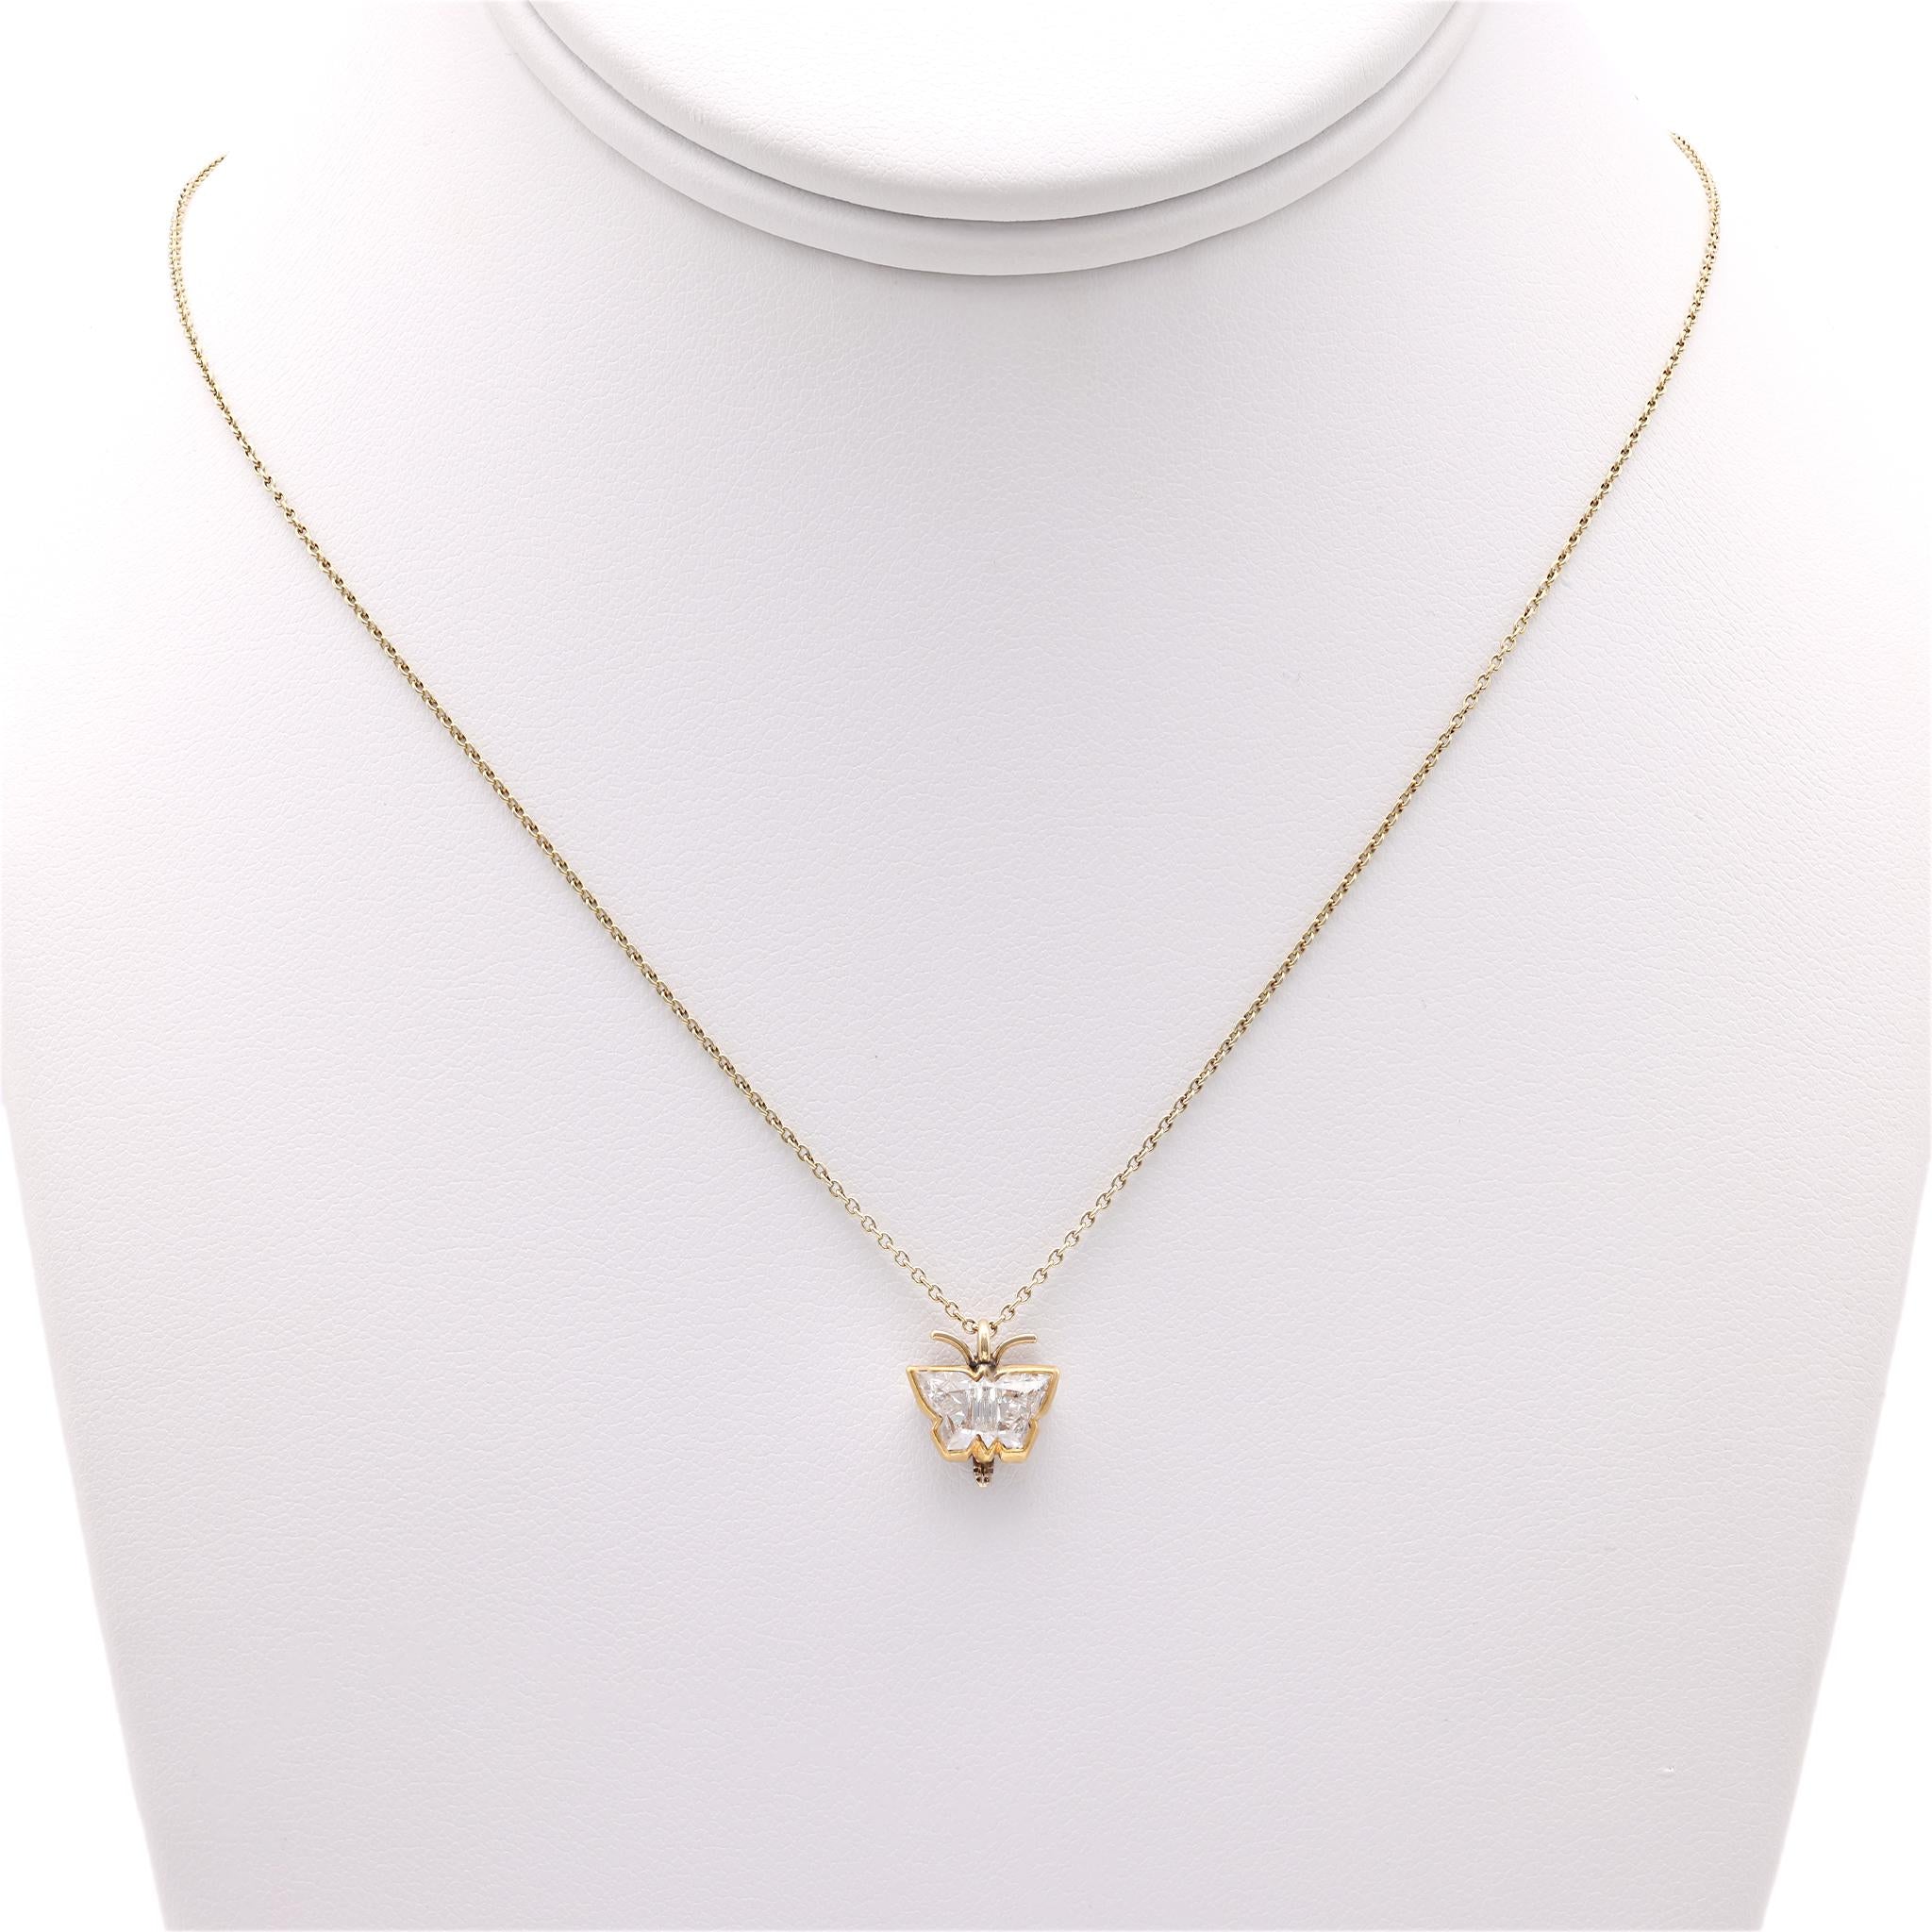 Modern 1 Carat Butterfly Cut Diamond Gold Necklace  Jack Weir & Sons   